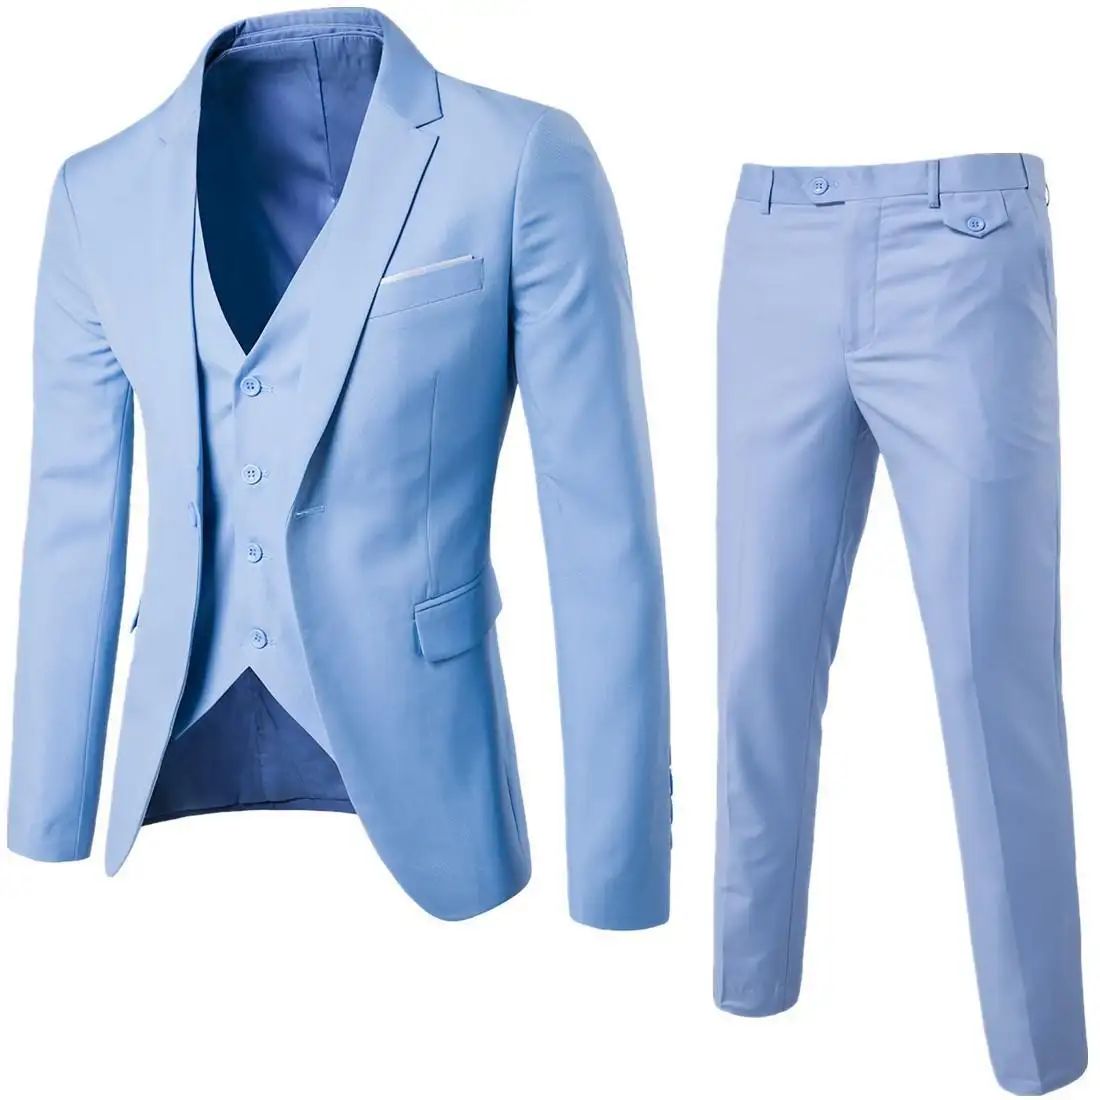 Fabrika fiyat resmi düğün erkekler için iş elbisesi set İtalyan yüksek kaliteli ince erkek 3-Piece suits uyar